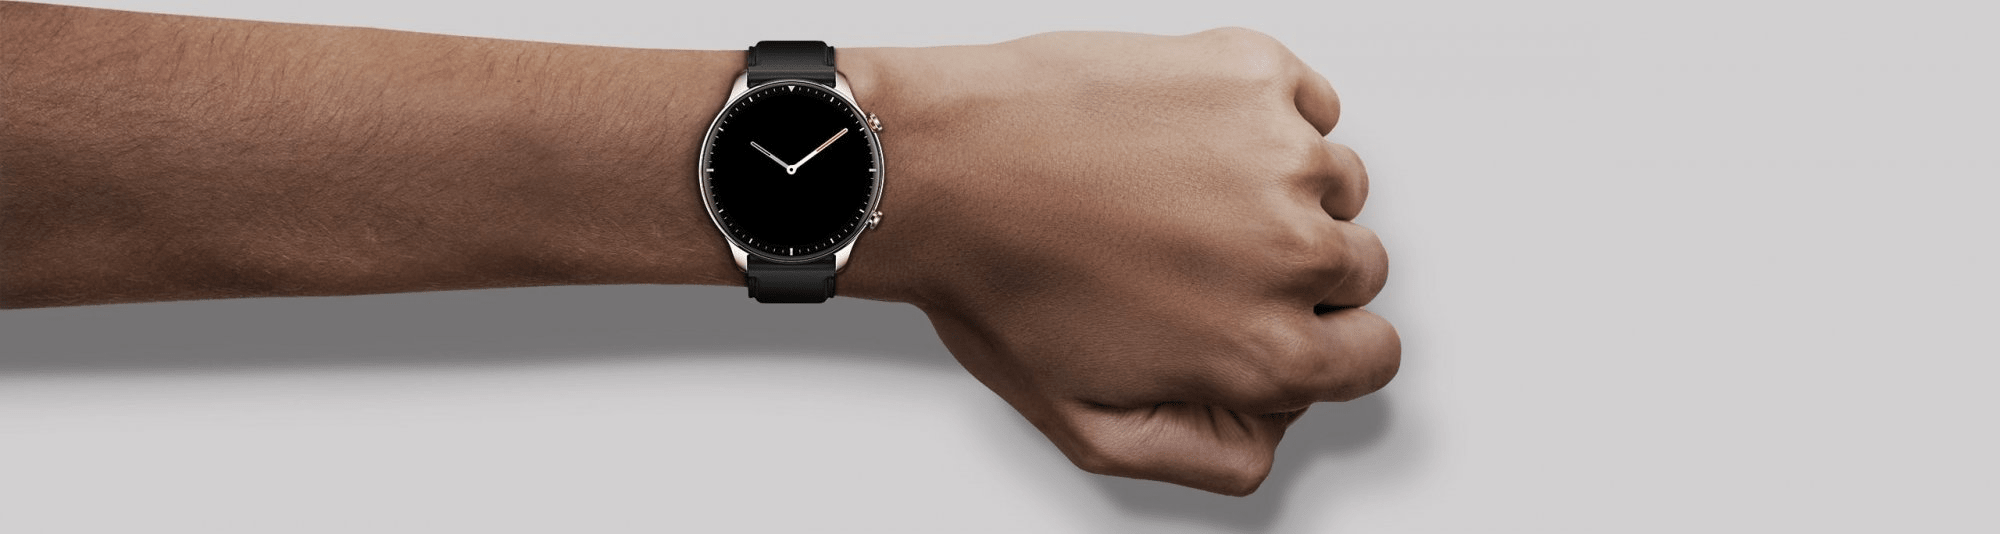 moderní chytré hodinky ve stylovém provedení xiaomi amazfit GTR 2 bluetooth odlc sklo wlan alexa hlasové ovládání 14denní výdrž možnost telefonování vestavěný repráček a mikrofon měření okysličení krve tepu 12 sportovních režimů